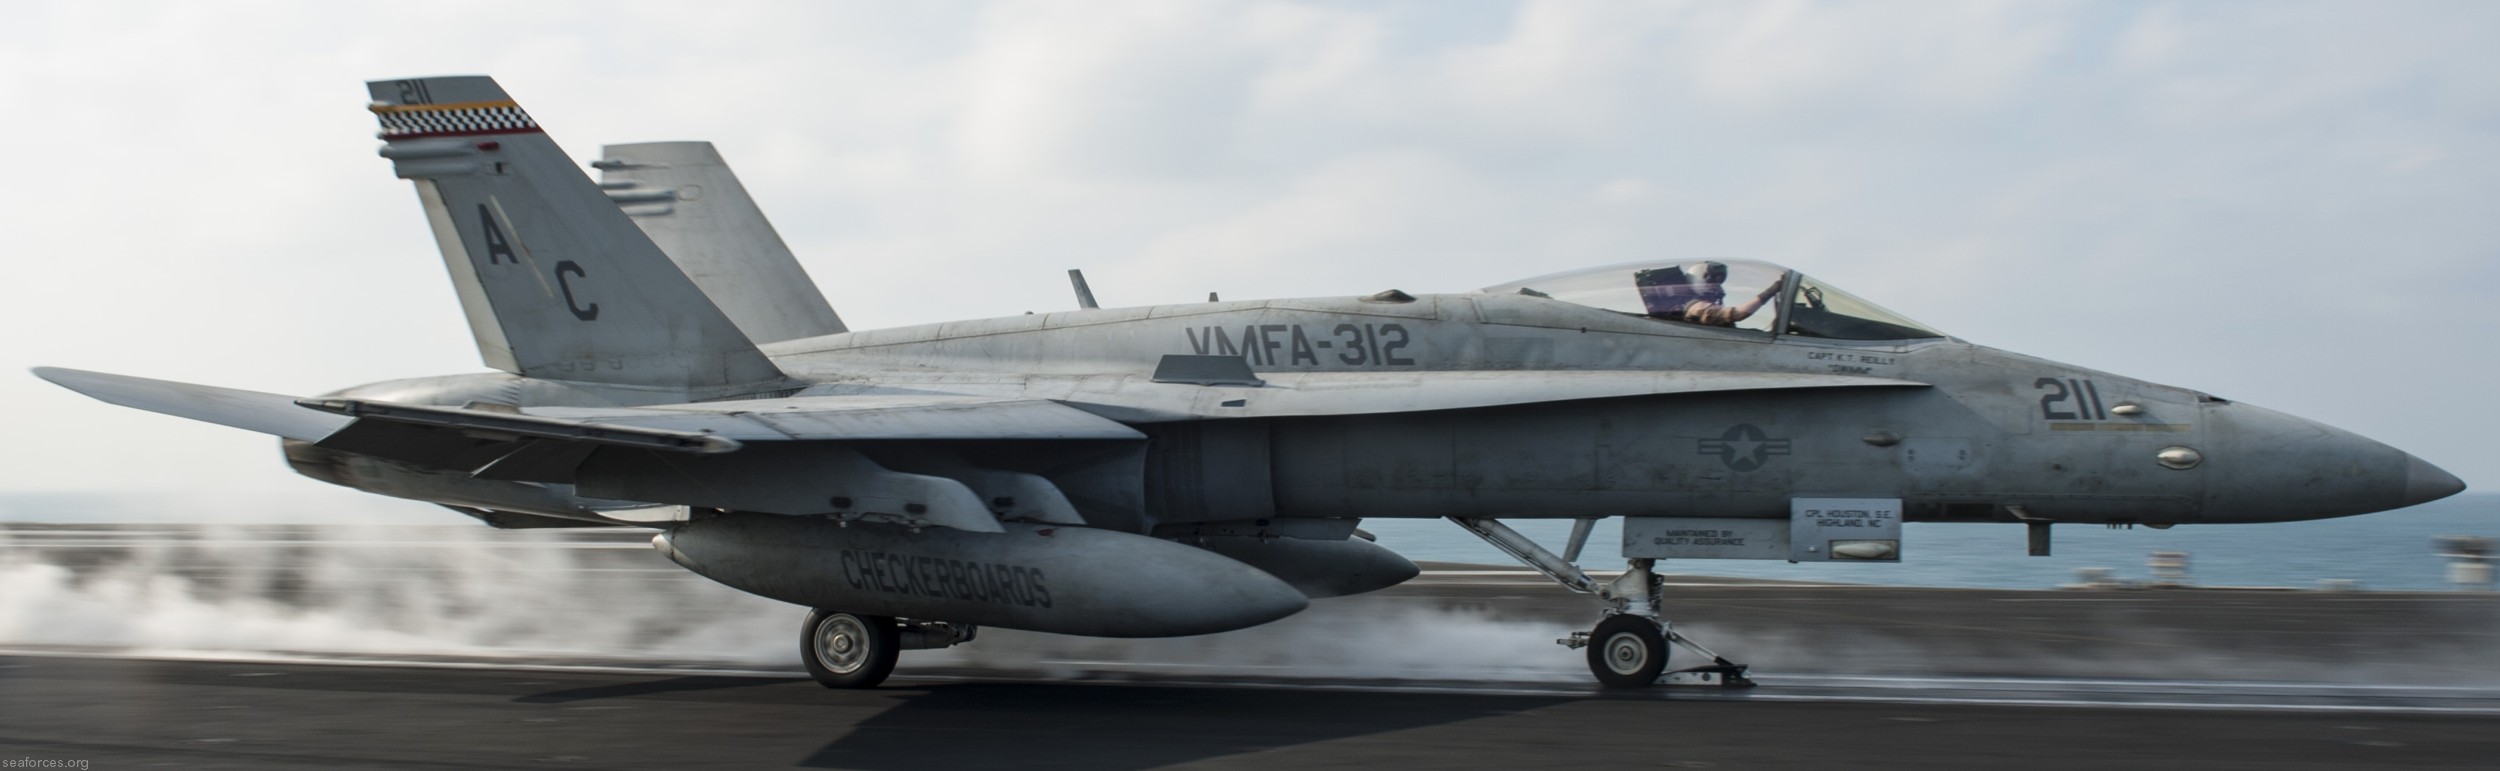 vmfa-312 checkerboards marine fighter attack squadron usmc f/a-18c hornet cvw-3 uss harry s. truman cvn-75 87